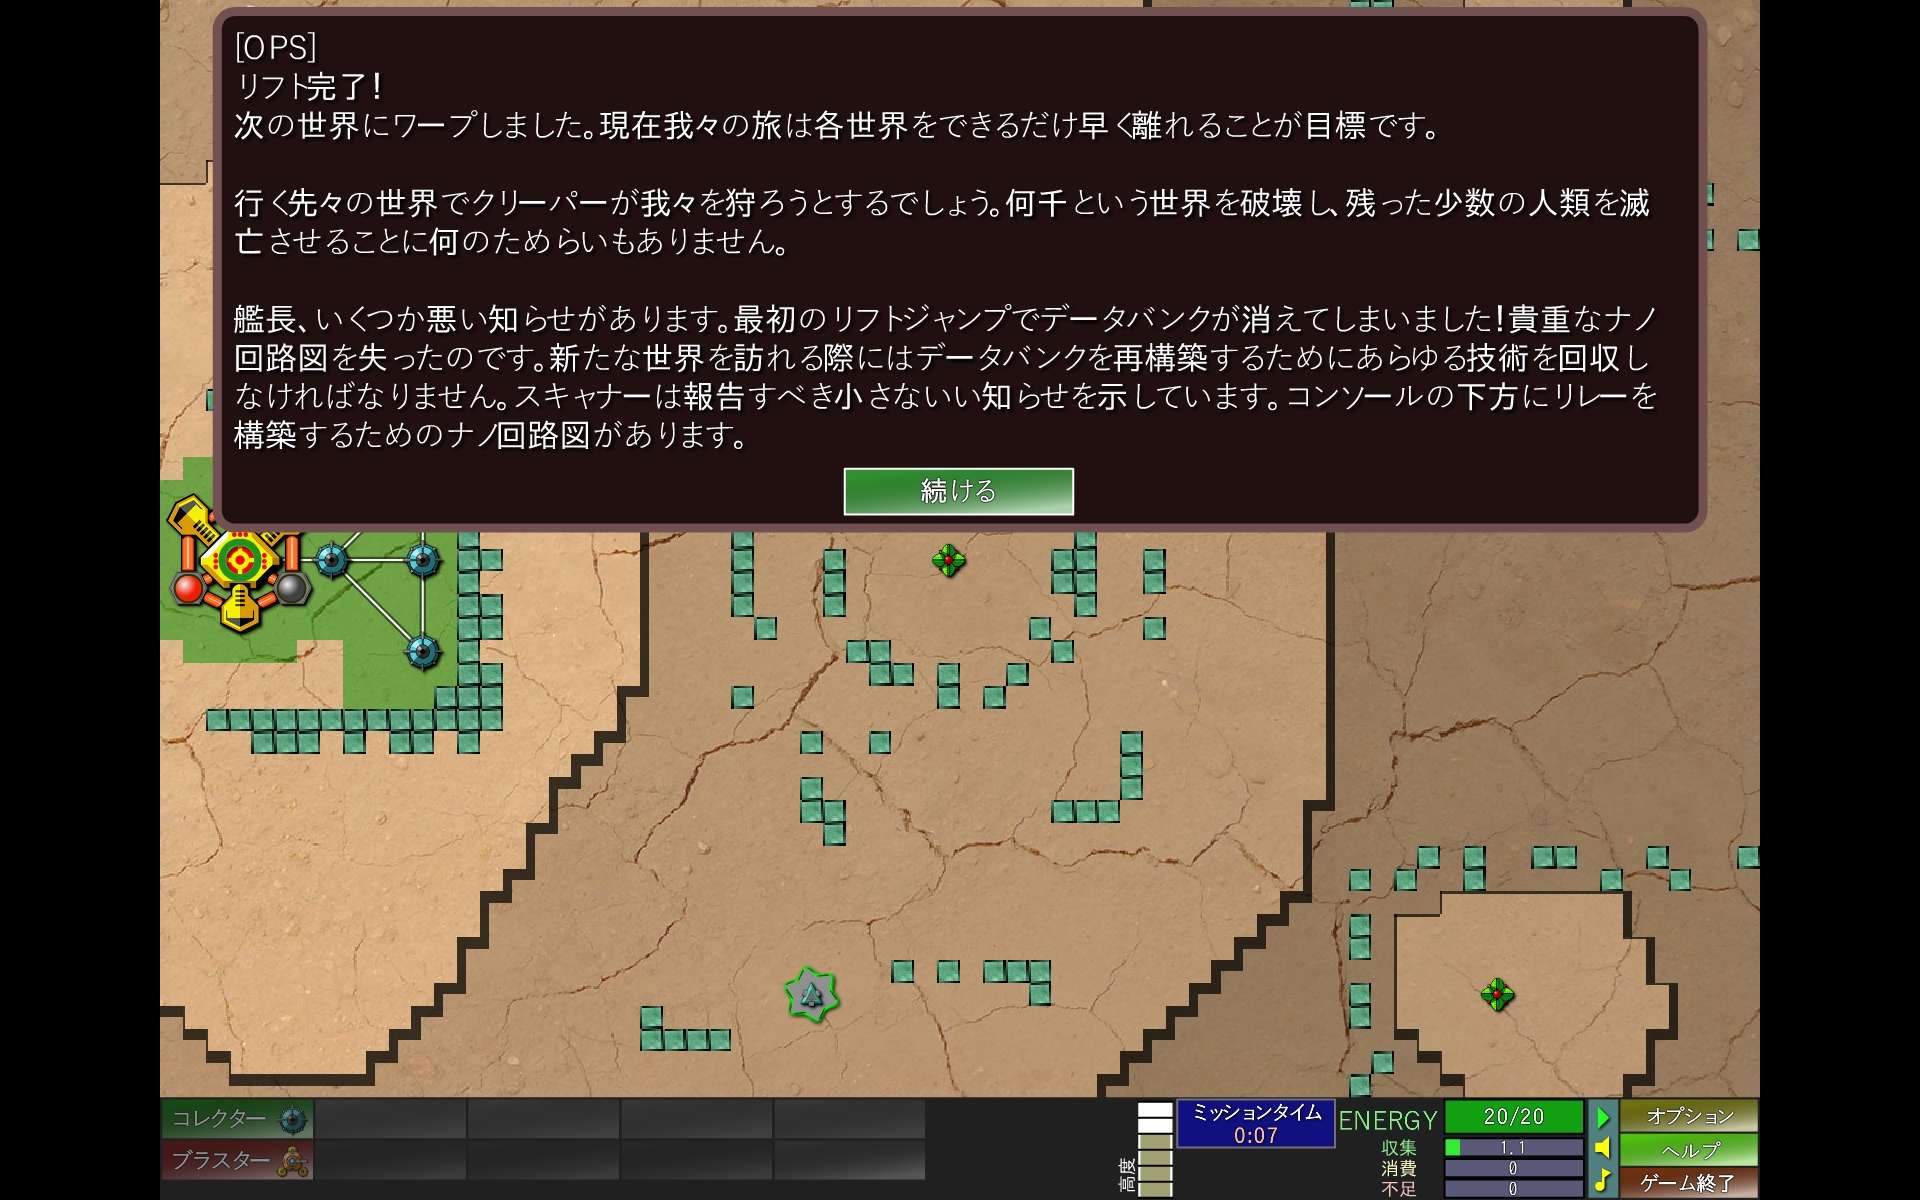 PC ゲーム Creeper World: Anniversary Edition 日本語化と JPEXS Free Flash Decompiler を使ったファイル解析メモ、日本語化後のスクリーンショット